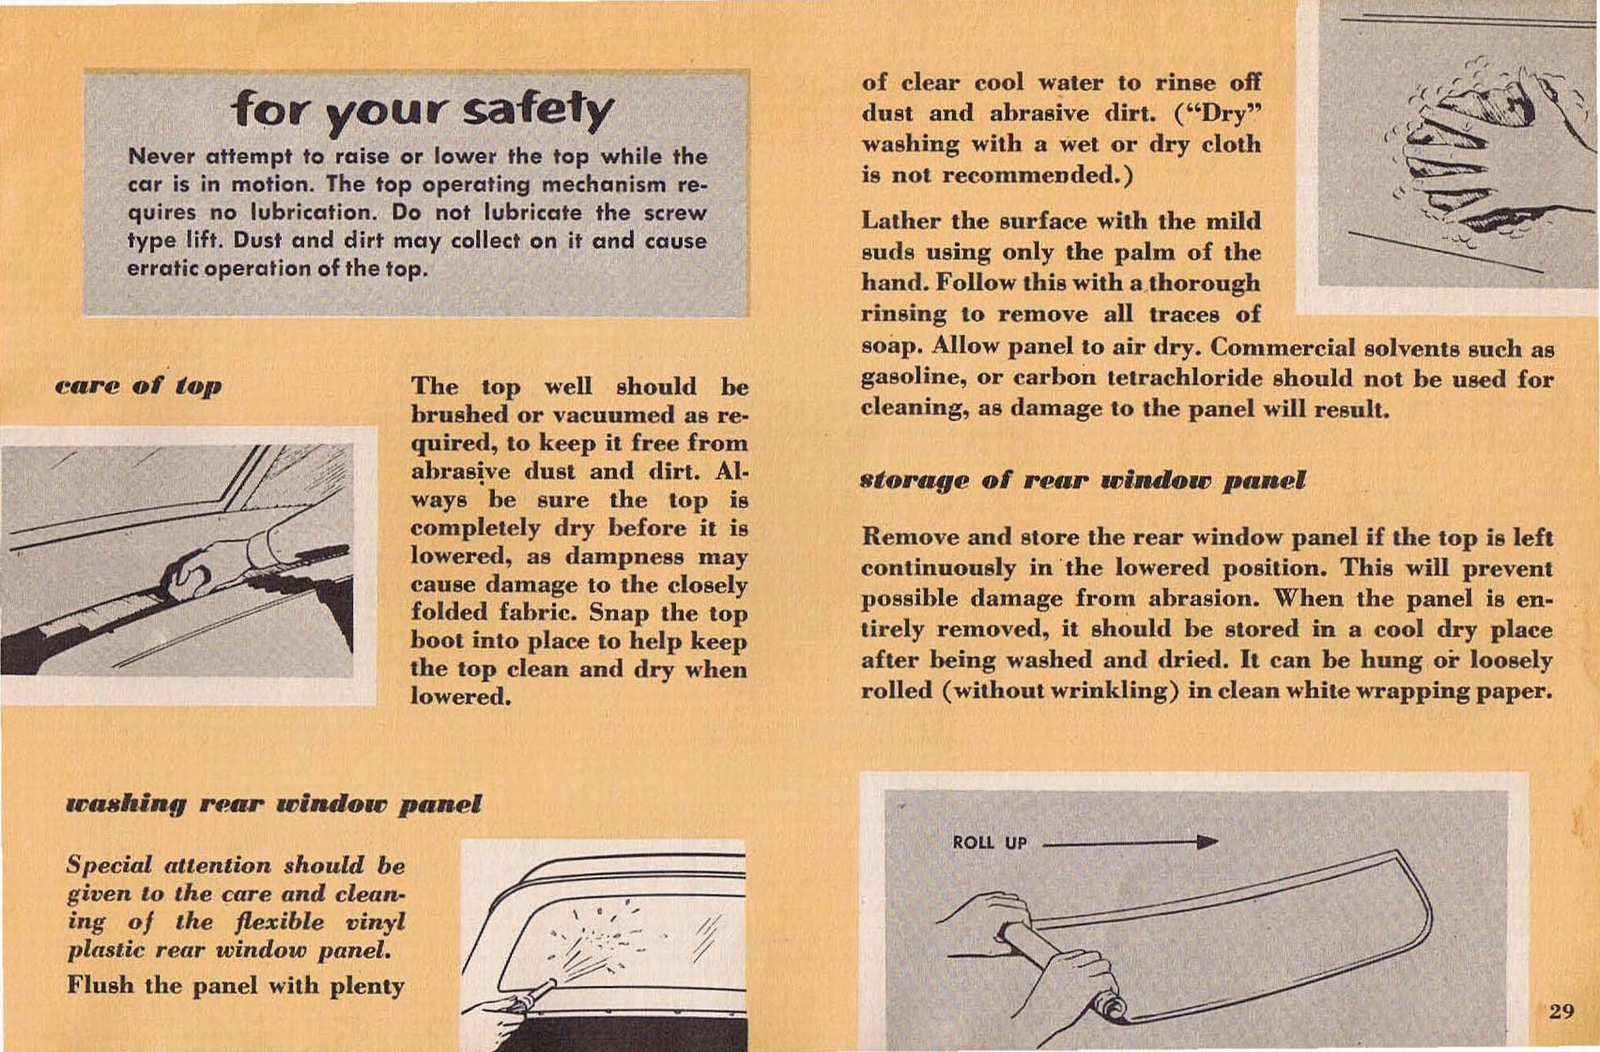 n_1953 Plymouth Owners Manual-29.jpg